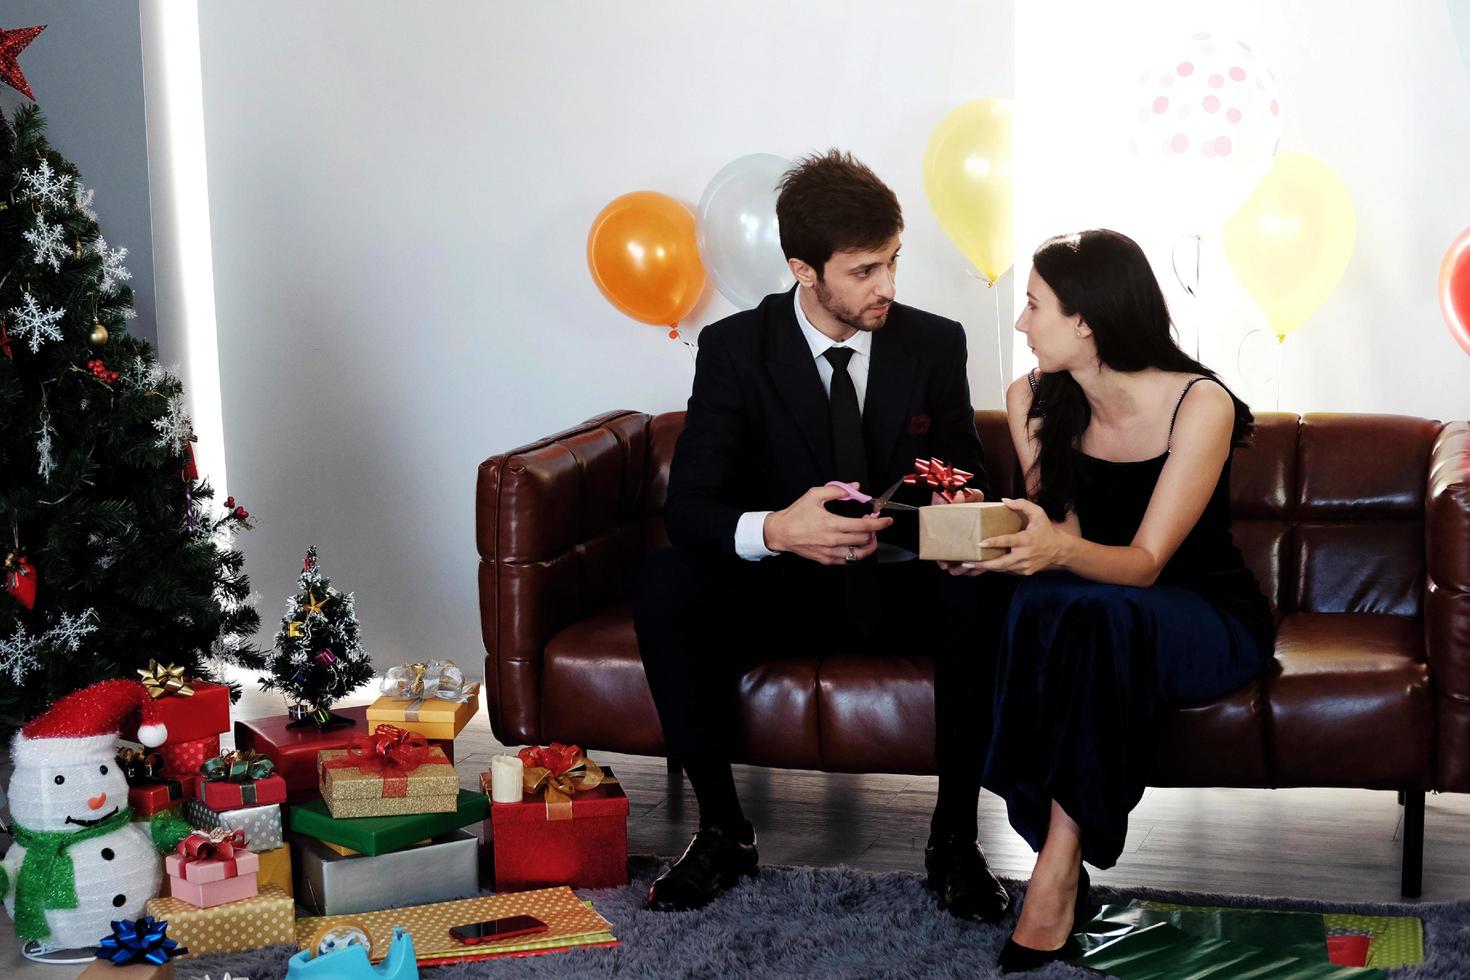 dulce pareja ama sonreír y pasar un tiempo romántico de navidad y celebrar la víspera de año nuevo en la decoración de un sofá marrón con árbol de navidad, globos coloridos y cajas de regalo en la sala de estar en casa foto